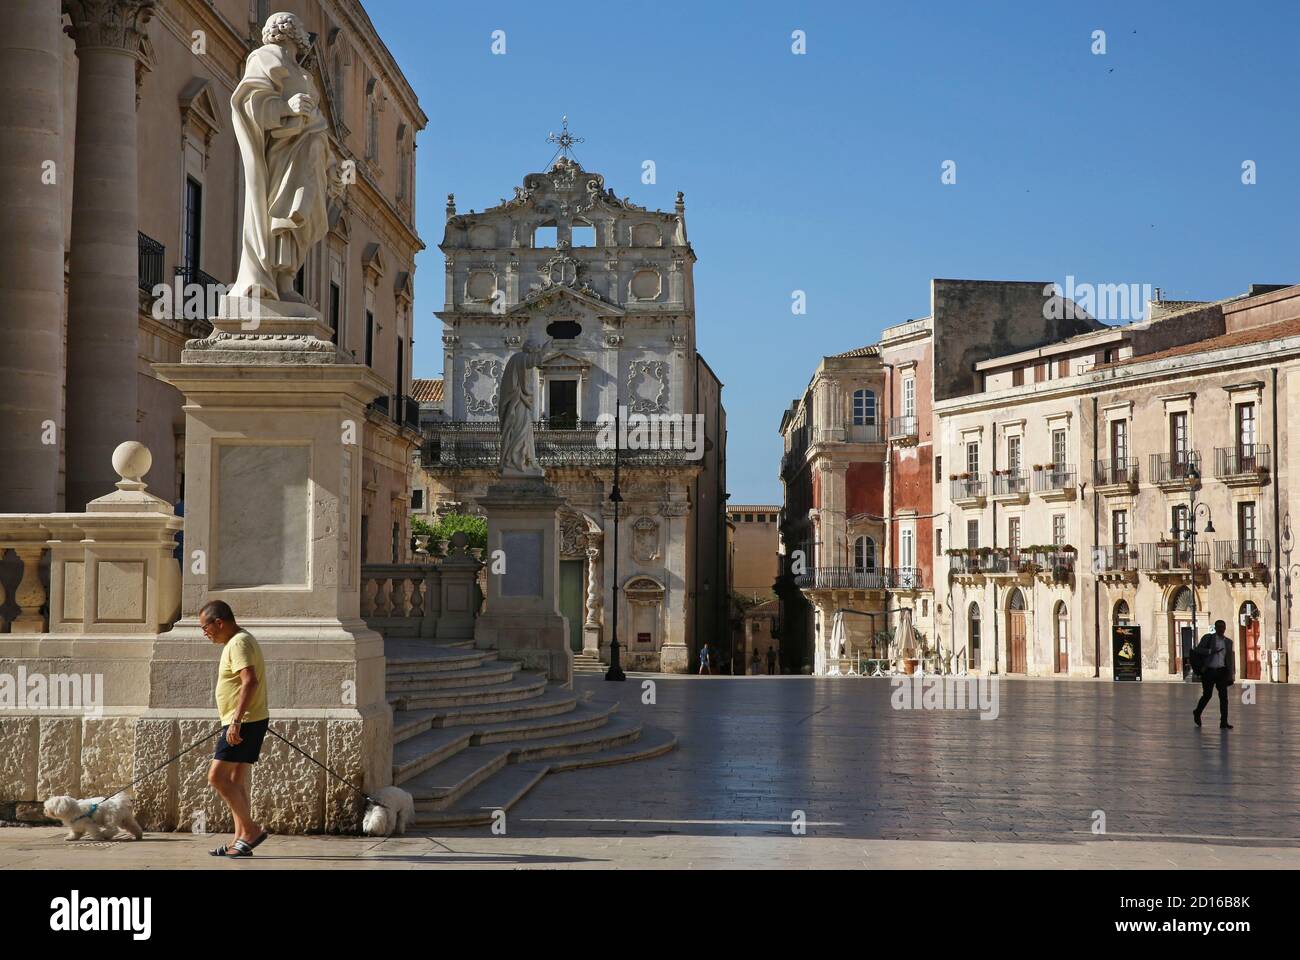 Italy, Sicily, Syracuse, Ortigia island, catedral of Syracuse and santa lucia alla badia church on the duomo square Stock Photo